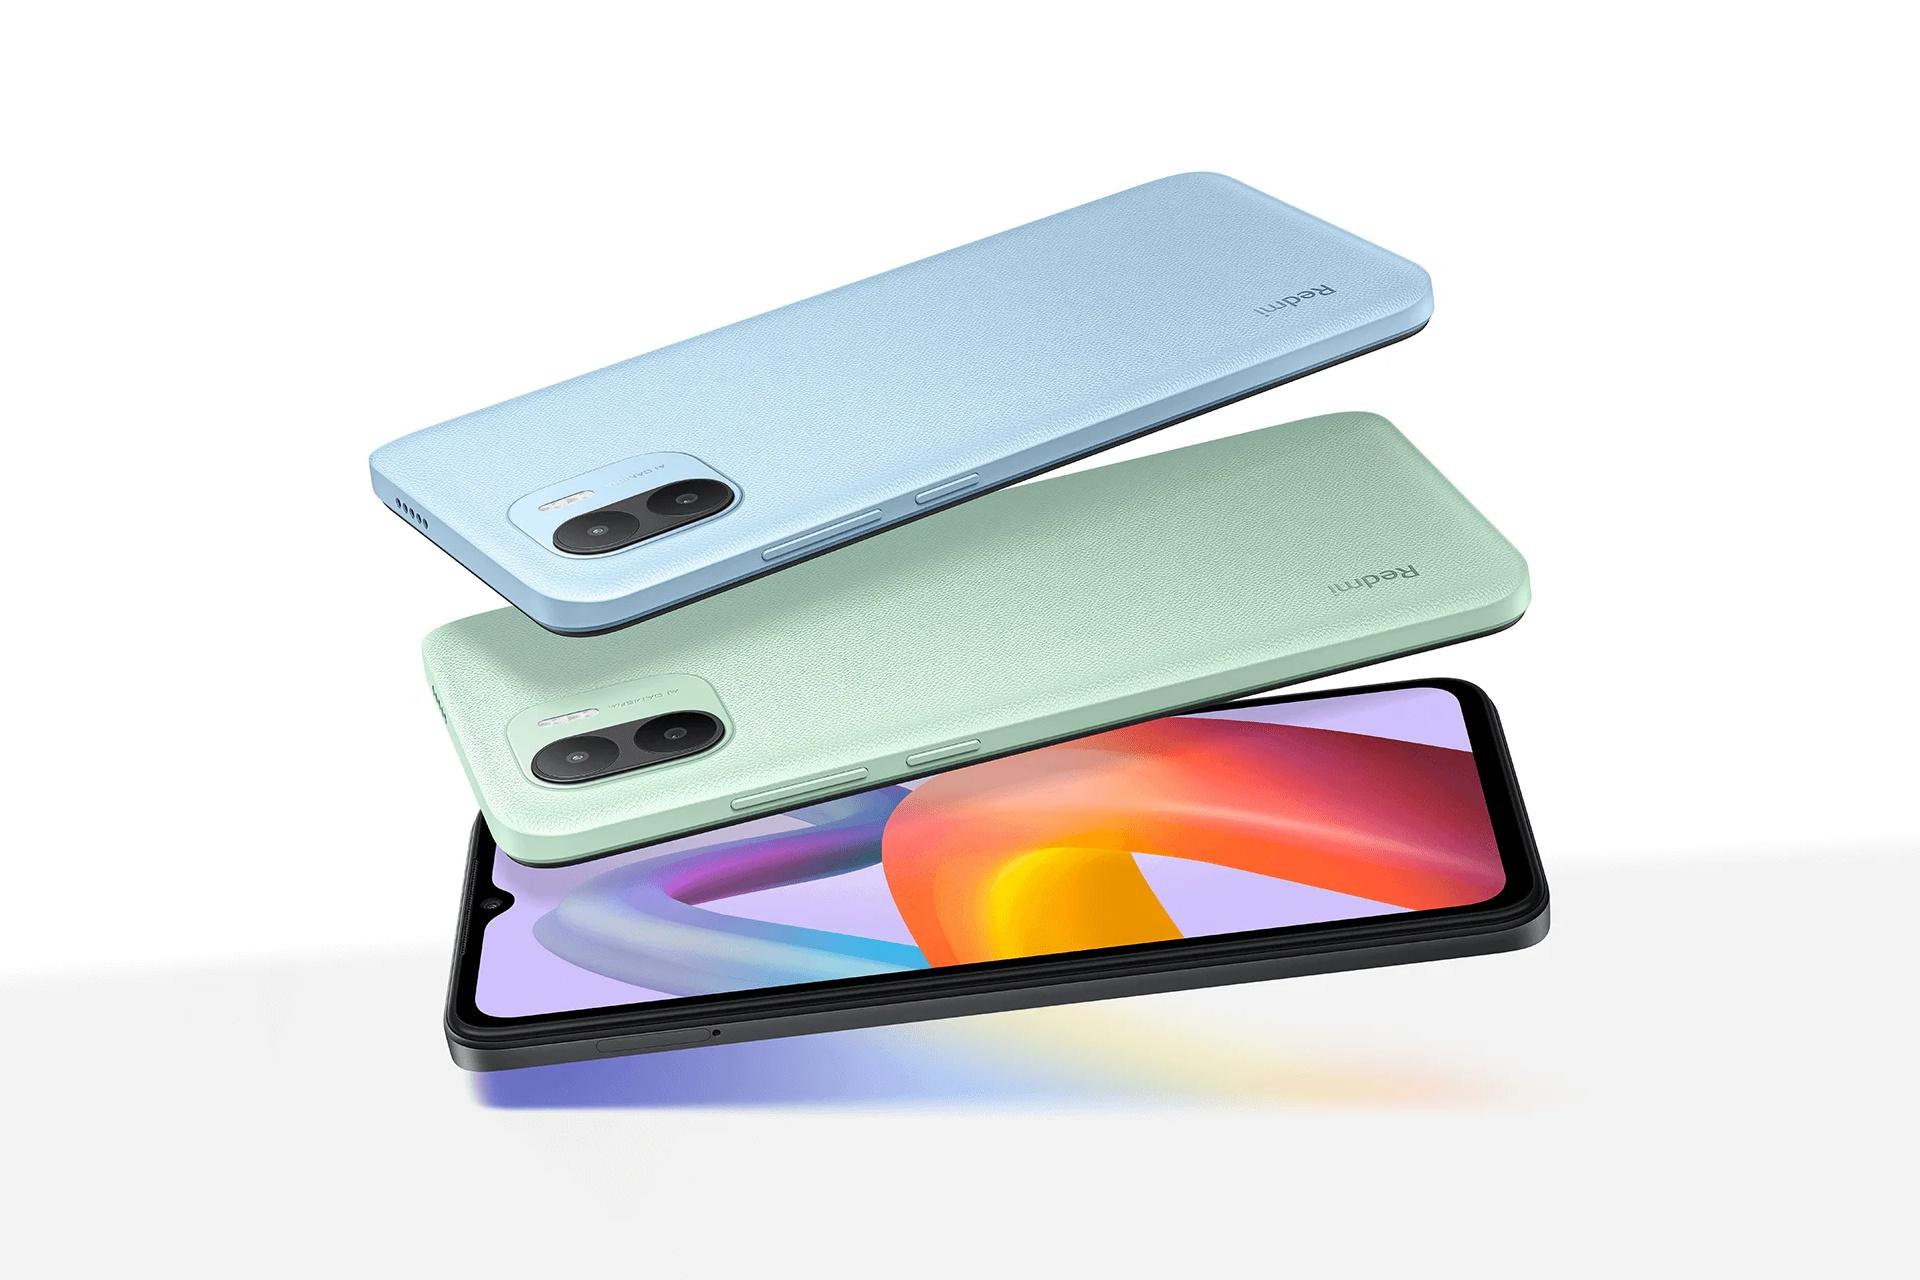 رنگ های مختلف گوشی موبایل ردمی A2 شیائومی / Xiaomi Redmi A2